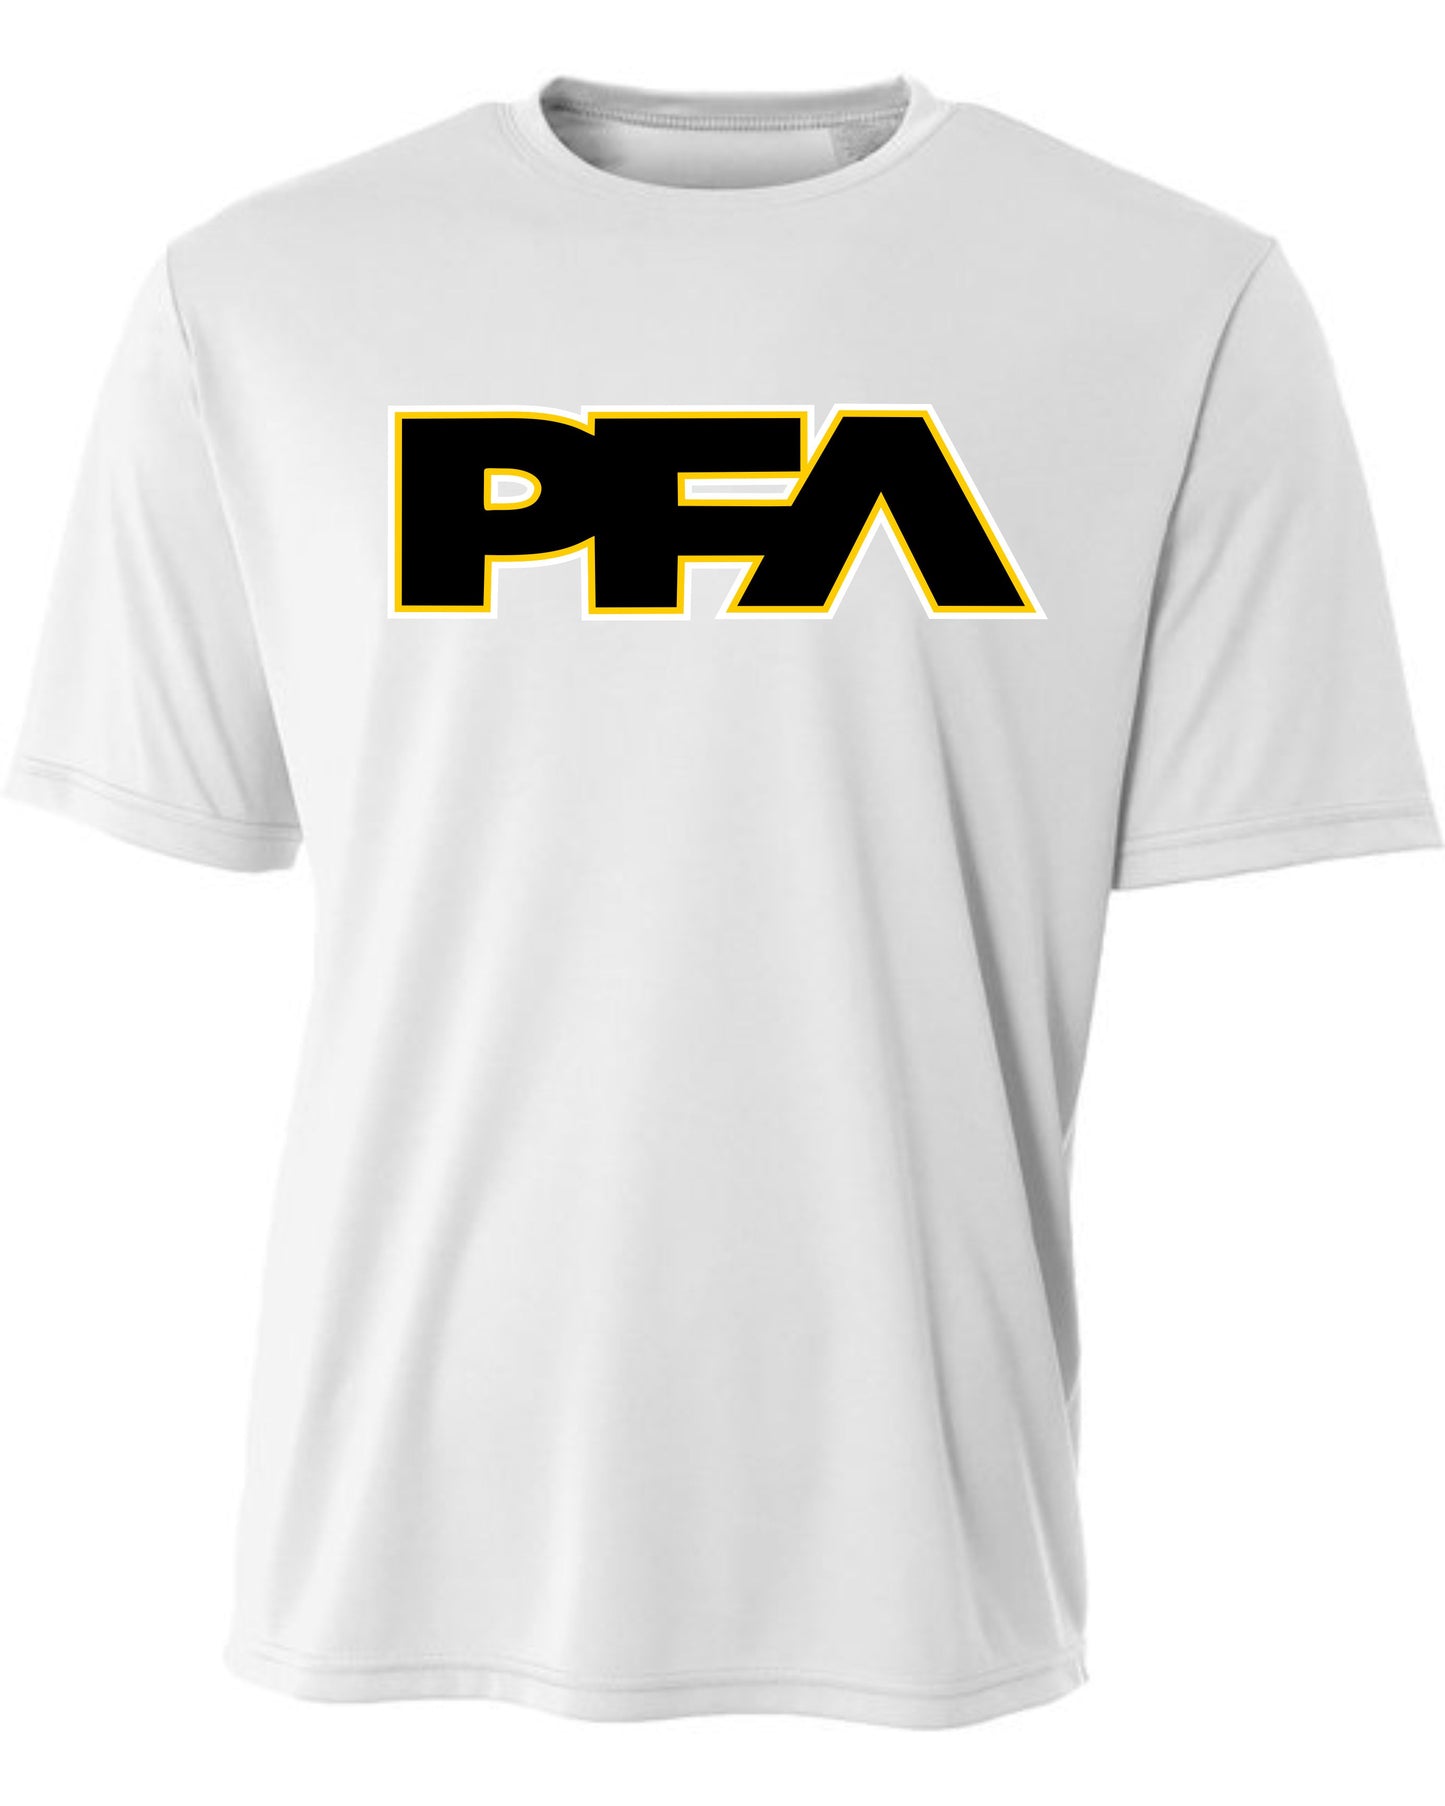 PFA Dri Fit T-Shirt - White